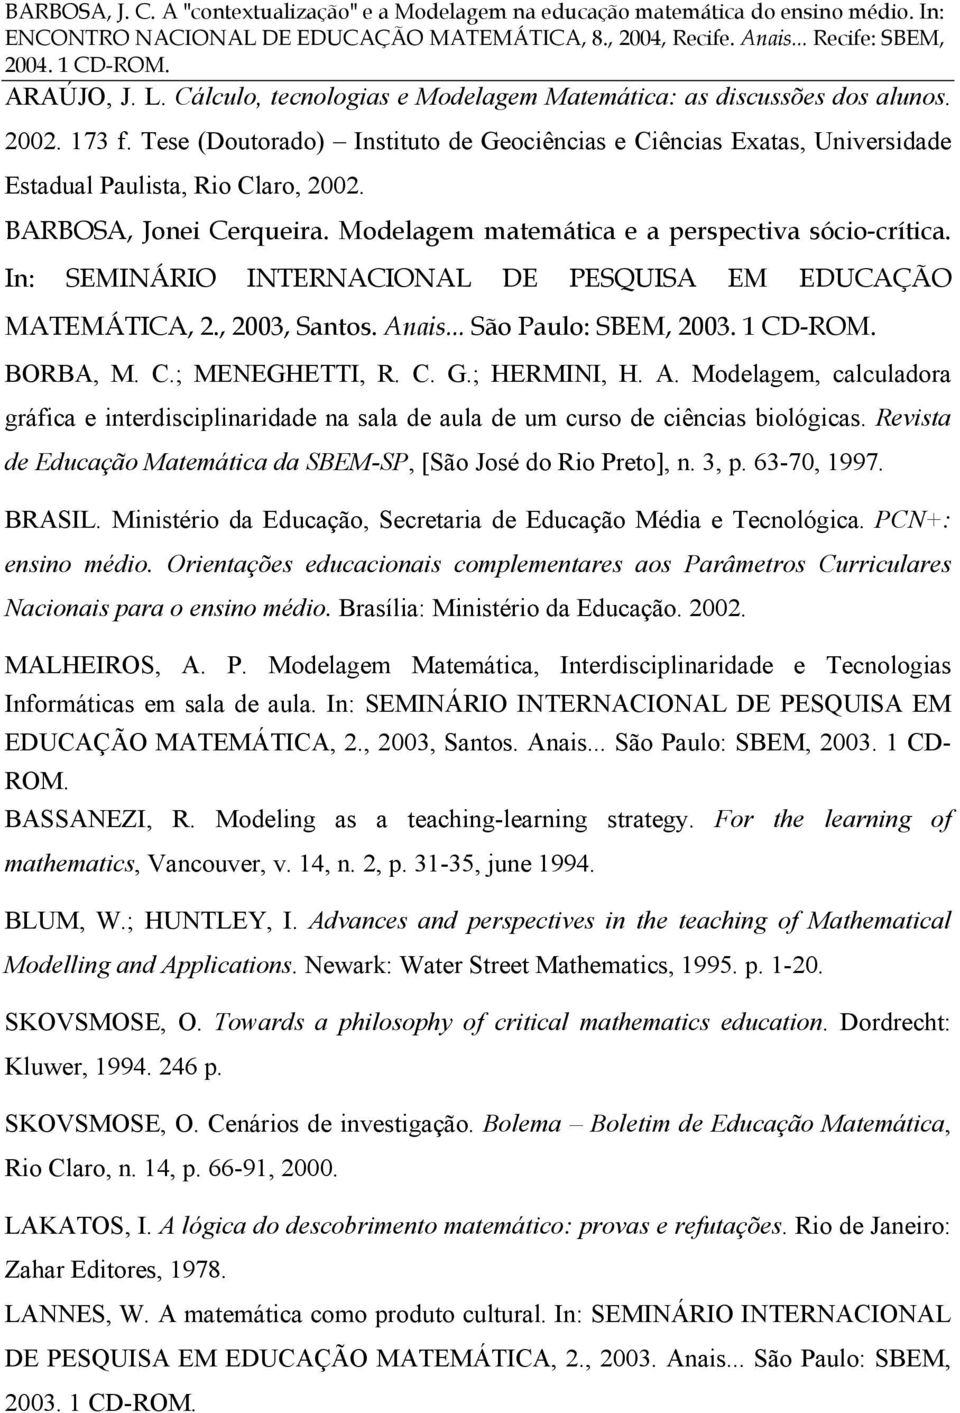 In: SEMINÁRIO INTERNACIONAL DE PESQUISA EM EDUCAÇÃO MATEMÁTICA, 2., 2003, Santos. Anais... São Paulo: SBEM, 2003. 1 CD-ROM. BORBA, M. C.; MENEGHETTI, R. C. G.; HERMINI, H. A. Modelagem, calculadora gráfica e interdisciplinaridade na sala de aula de um curso de ciências biológicas.